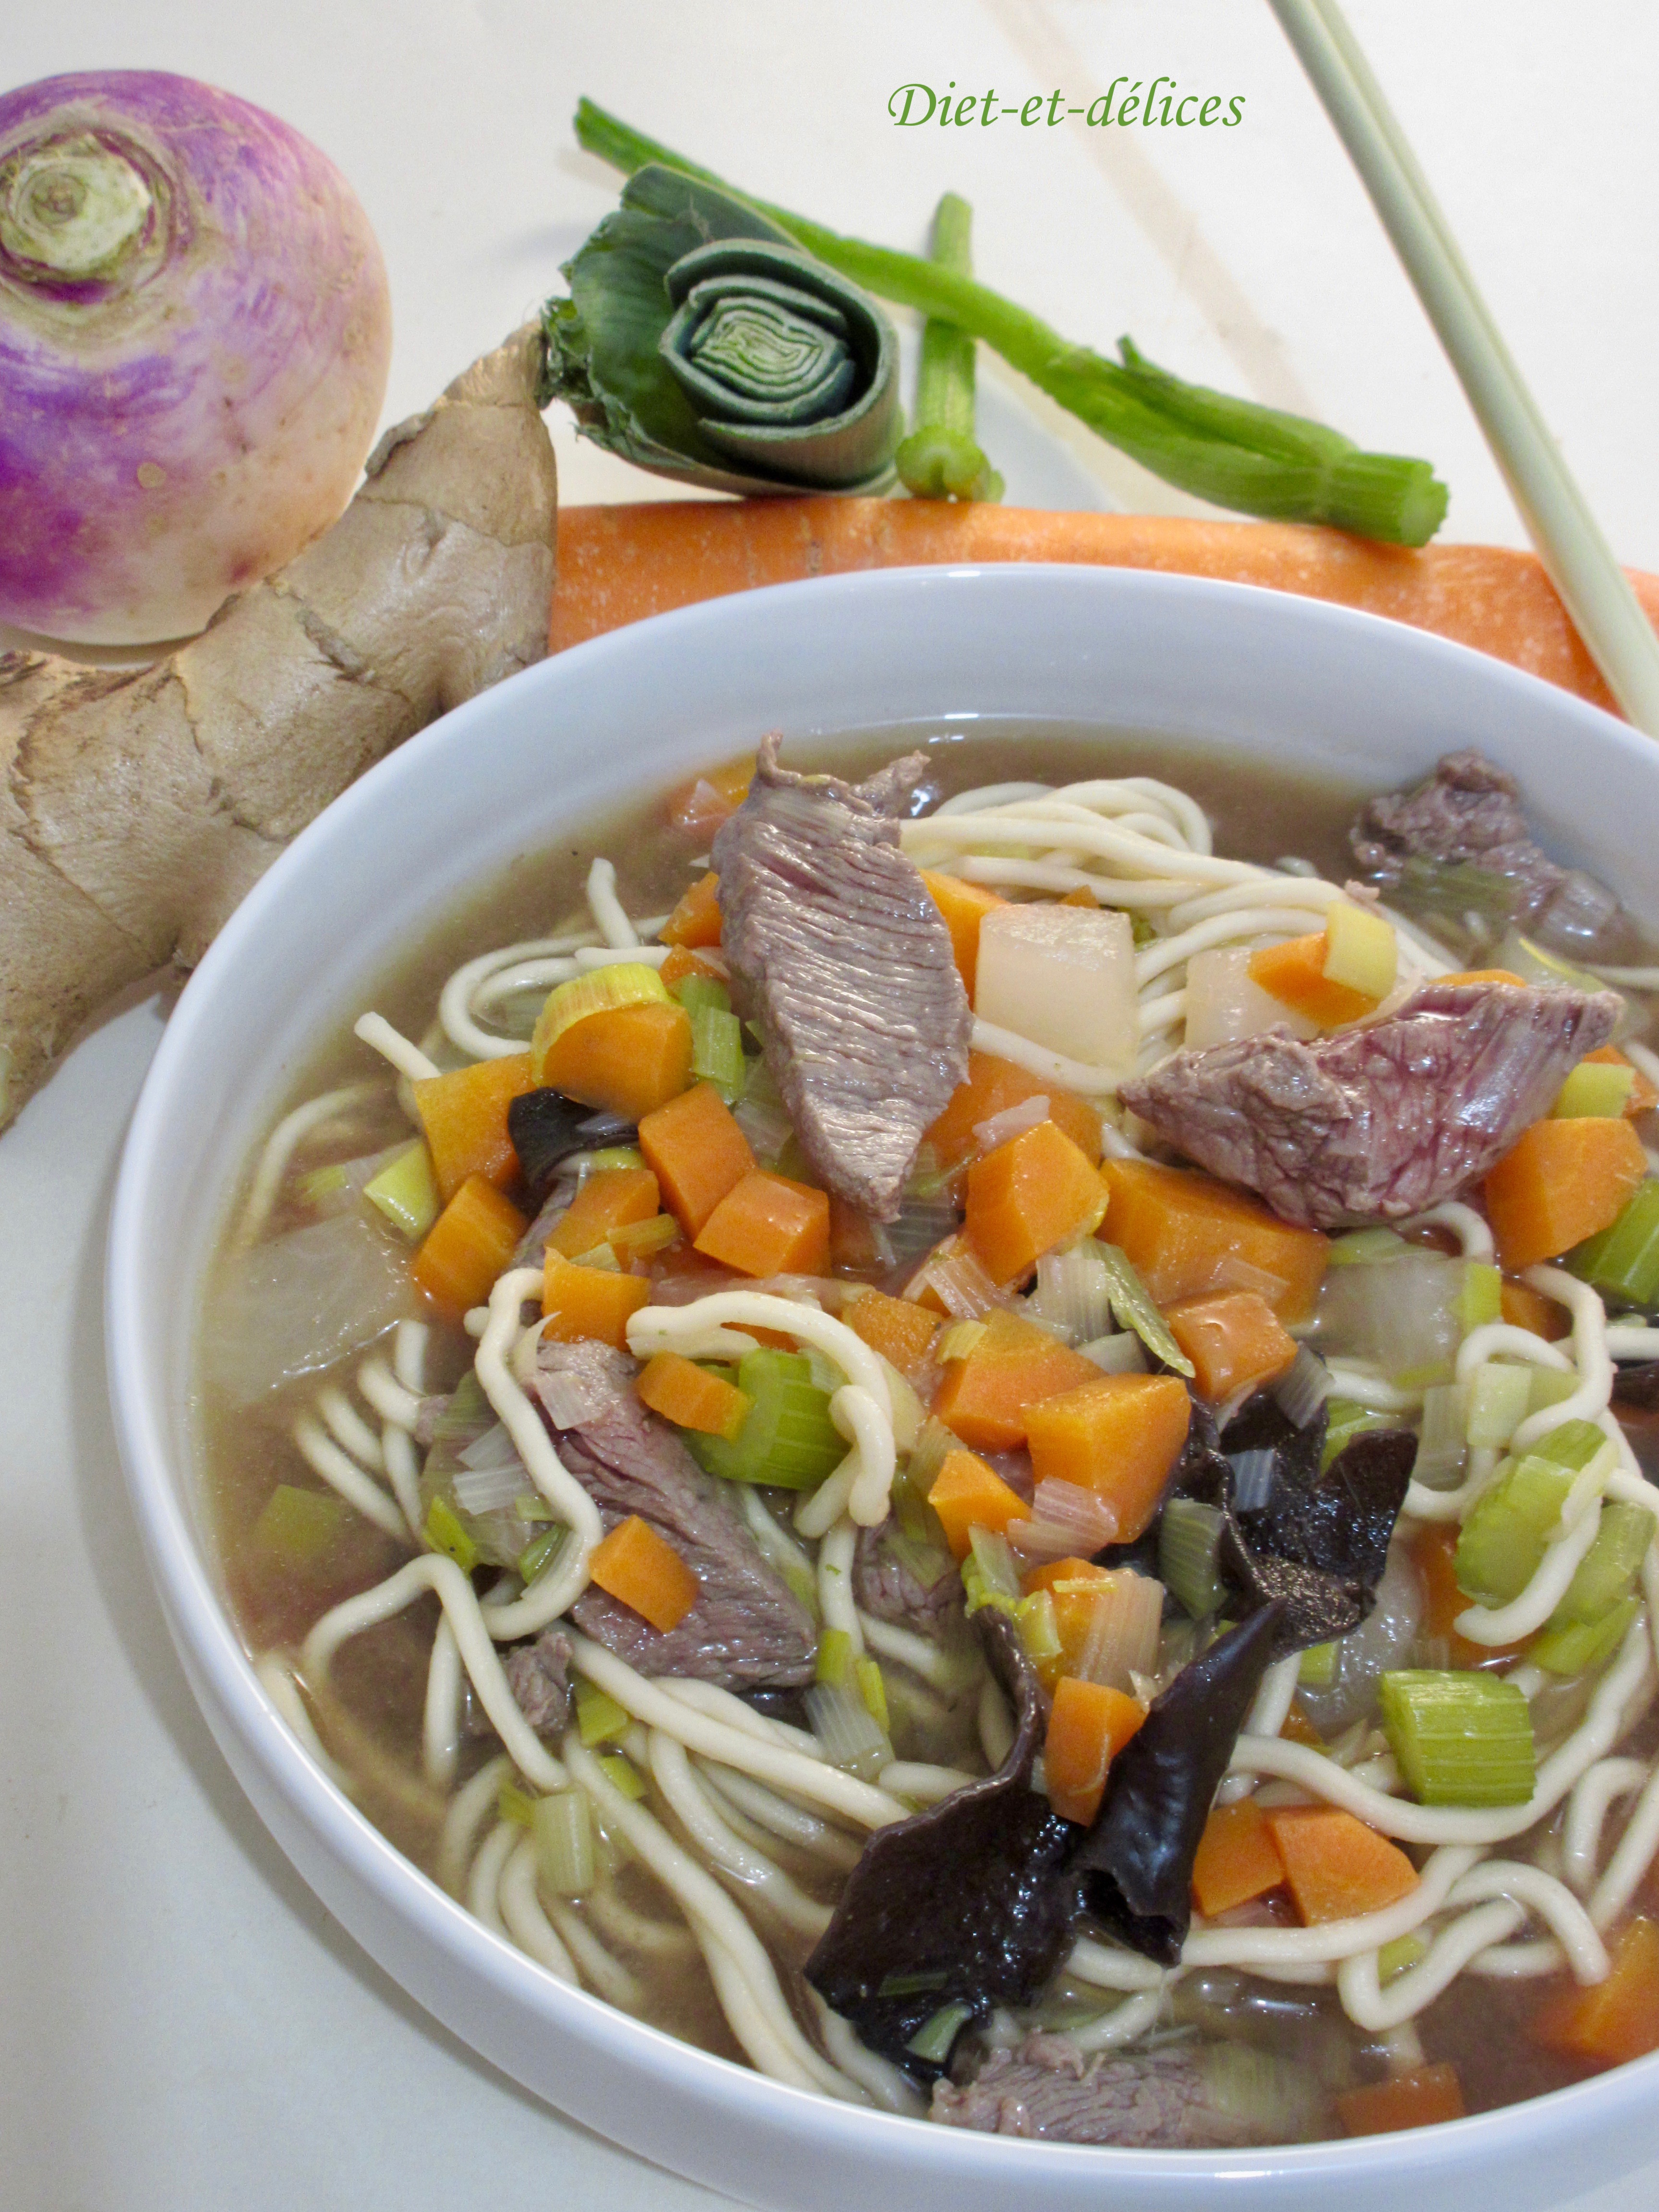 Soupe chinoise au boeuf : Diet & Délices - Recettes dietétiques